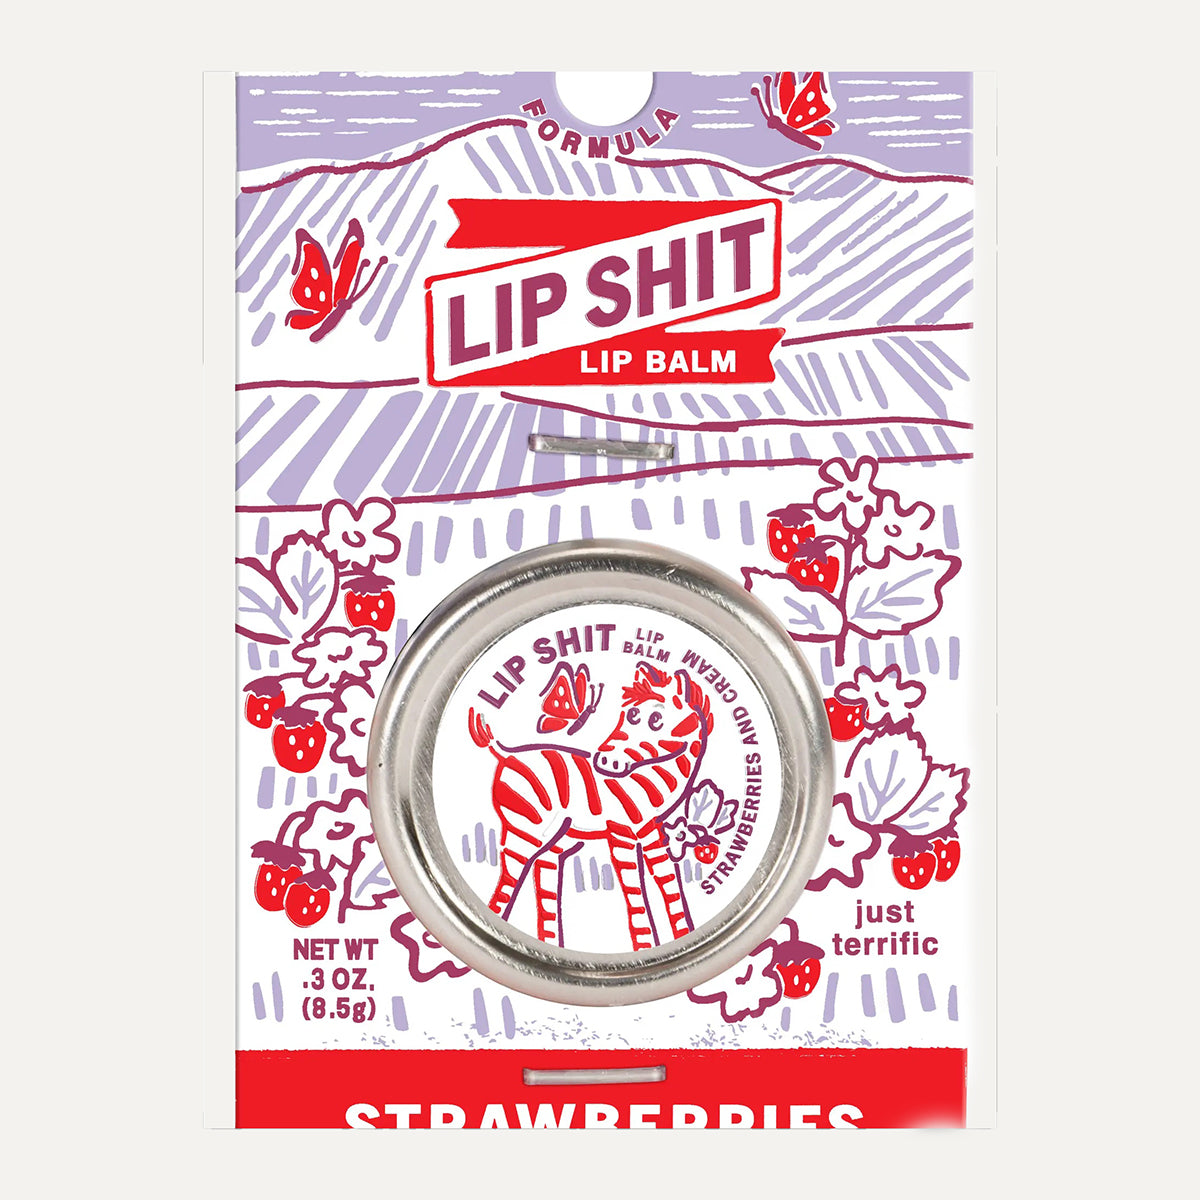 Incognito Strawberry Cream Lip Shit Lip Balm